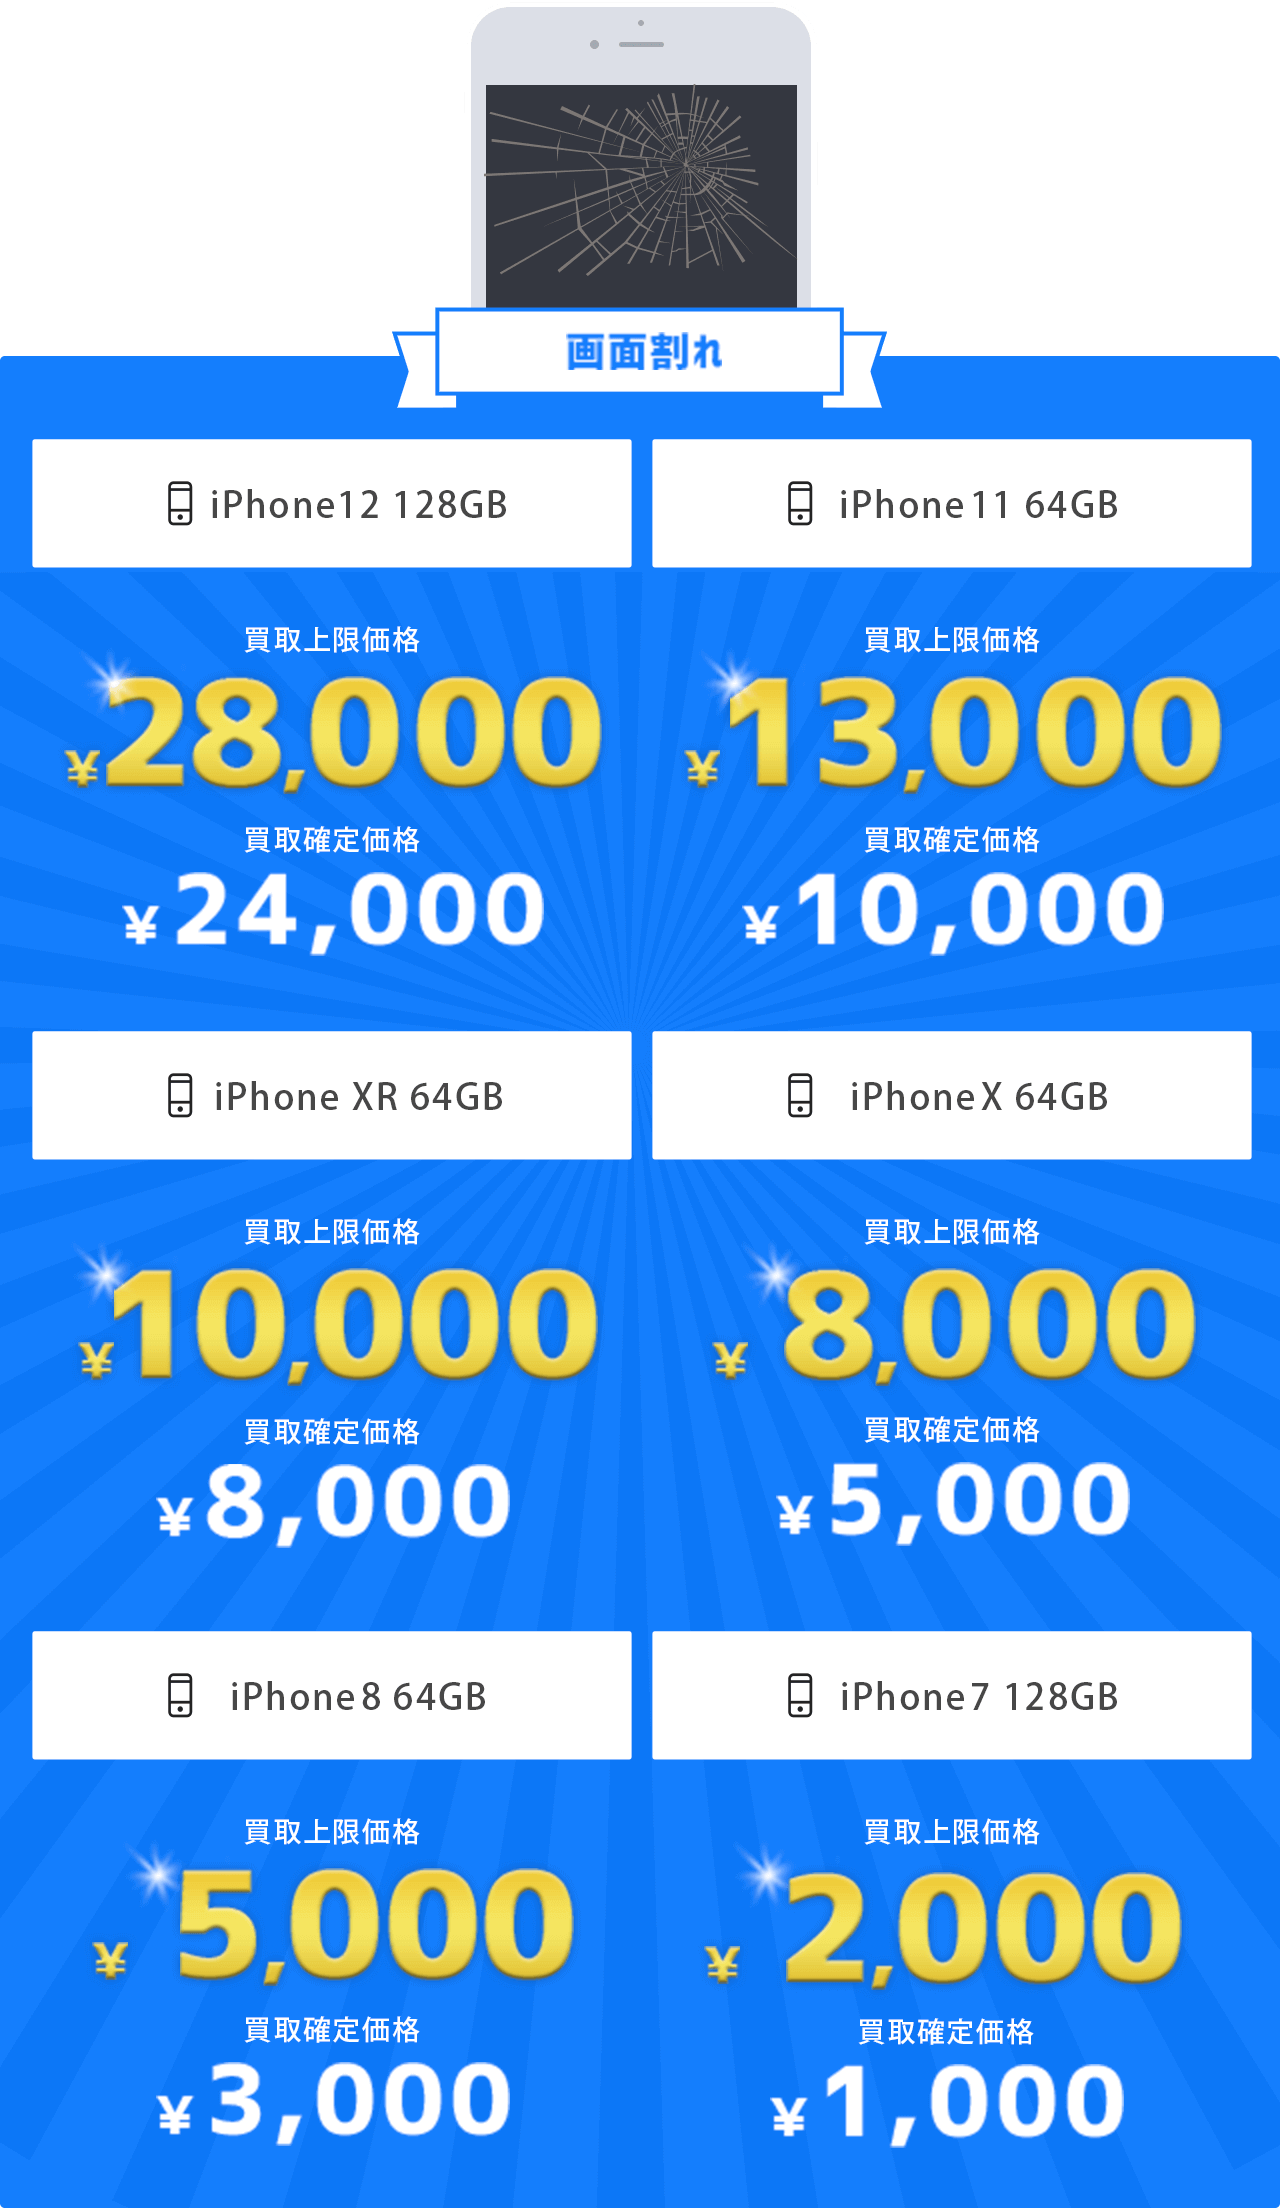 「画面割れ」上限買取価格[iPhone 11 64GB]￥10,000 [iPhone XR 64GB]￥8,000 [iPhone X 64GB]￥5,000 [iPhone8 64GB]￥3,000